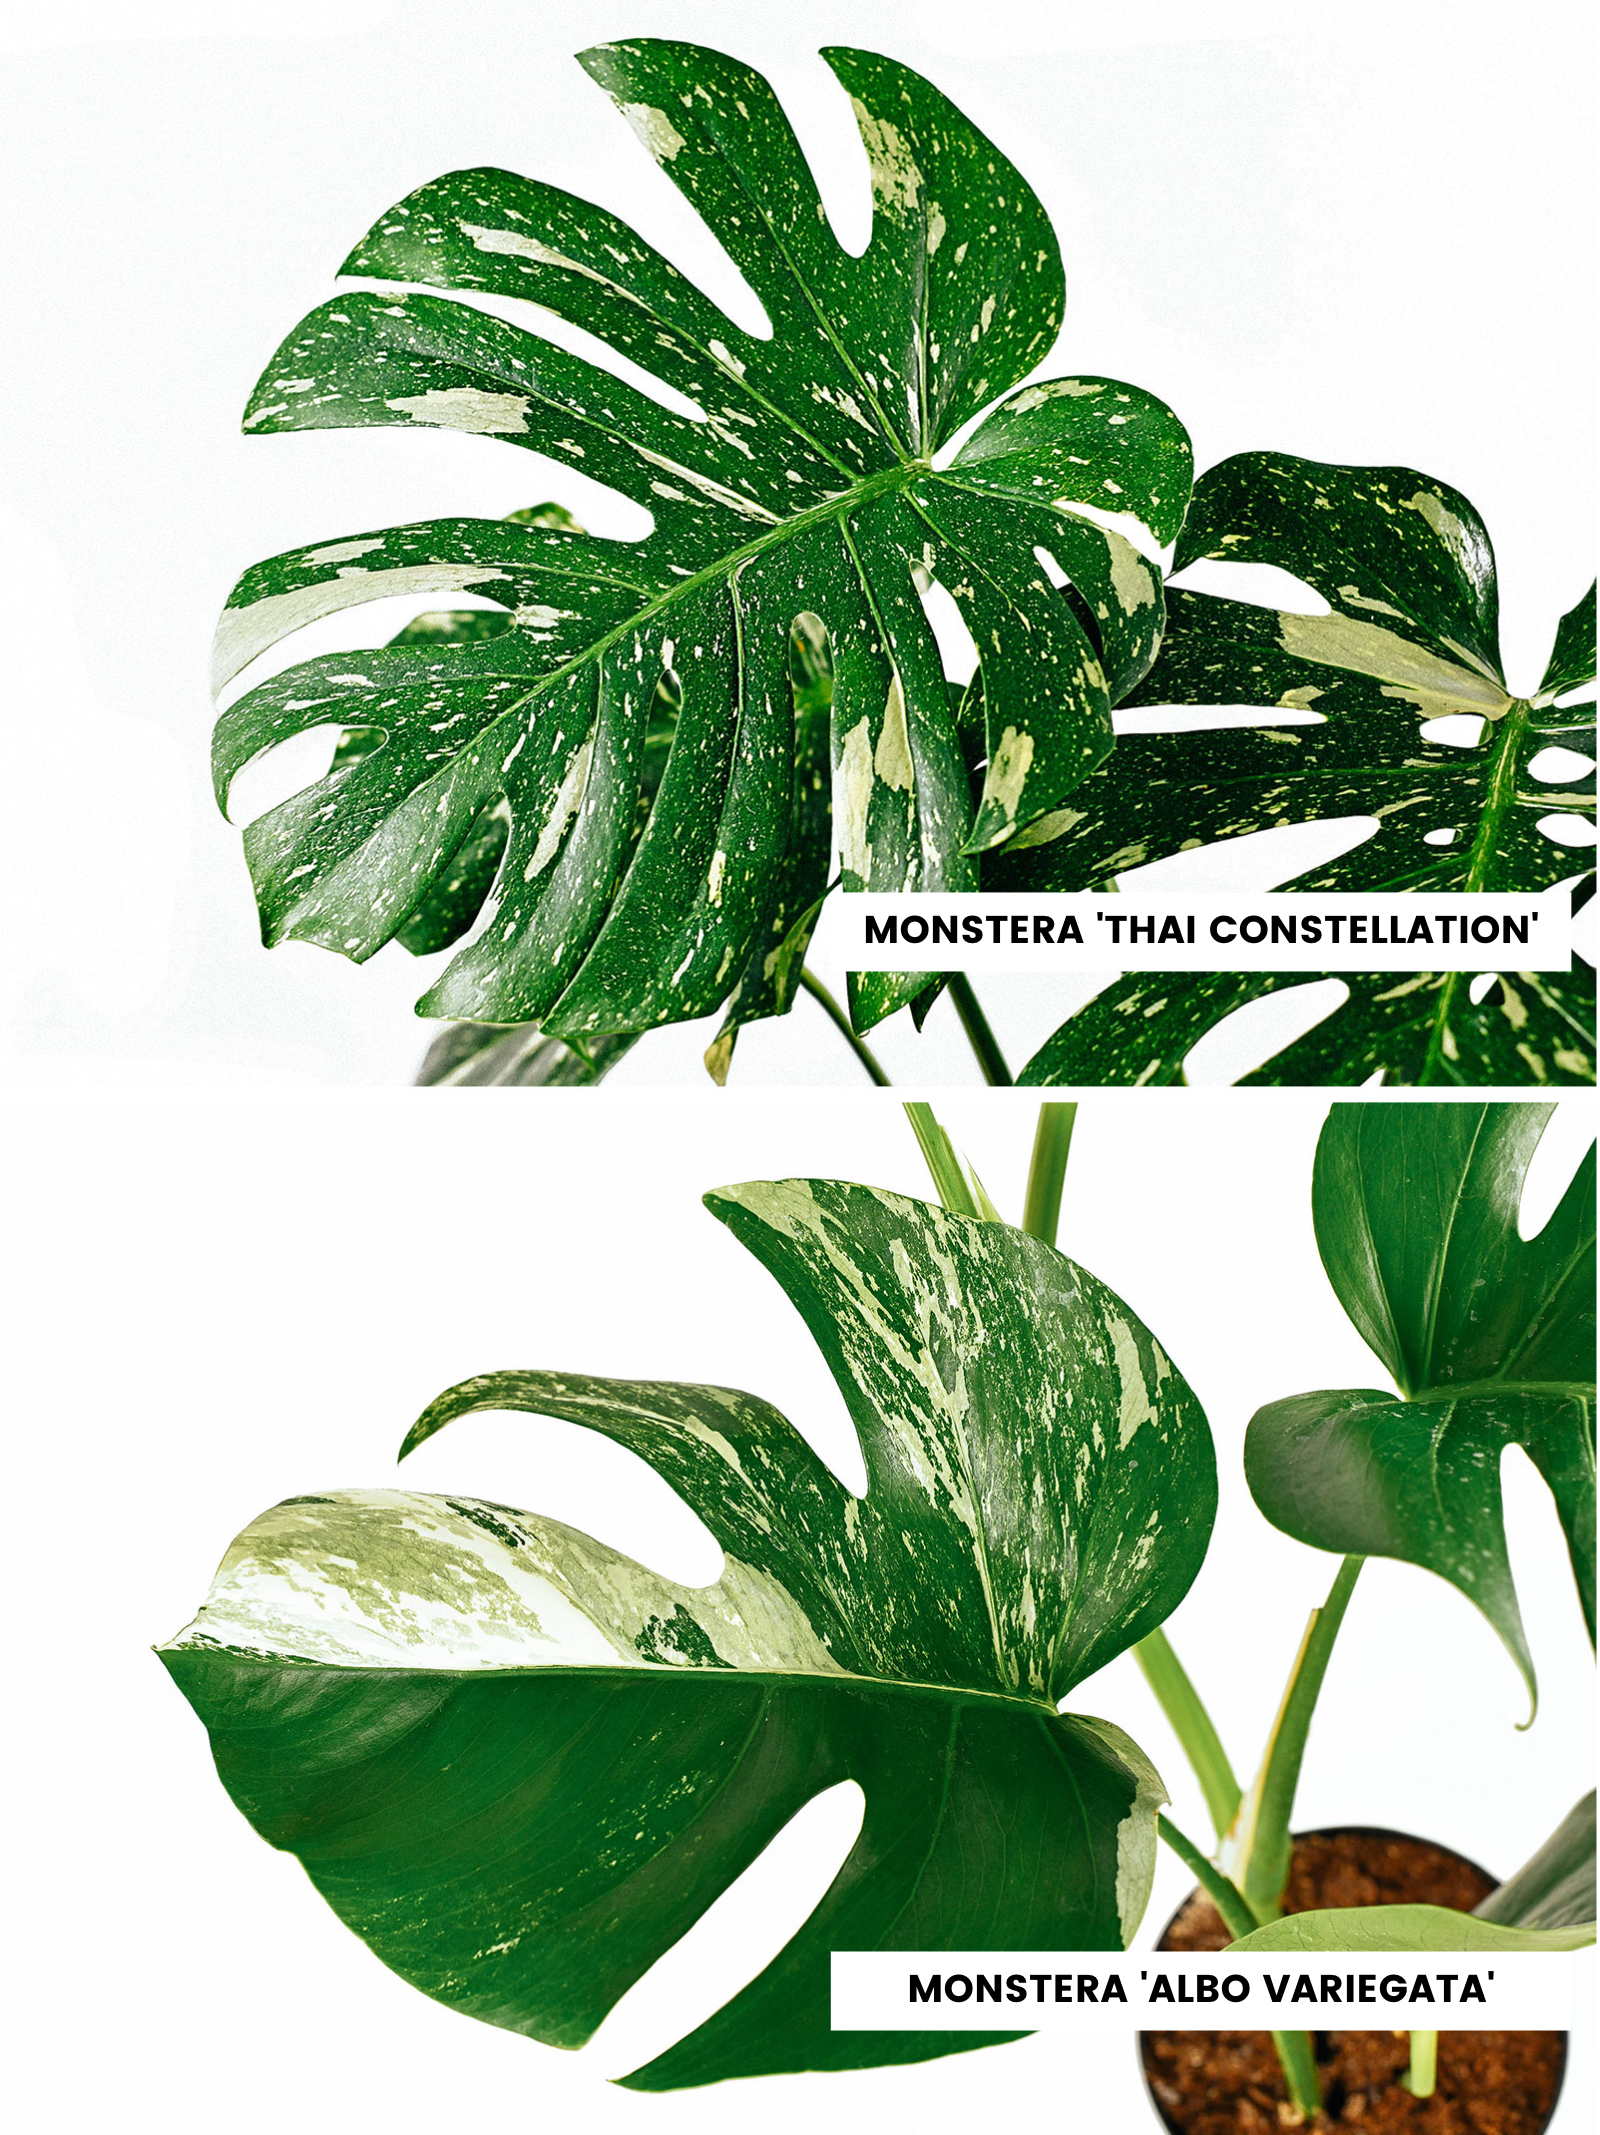 Comparison of Monstera Thai Constellation leaf vs. Monstera Albo Variegata leaf